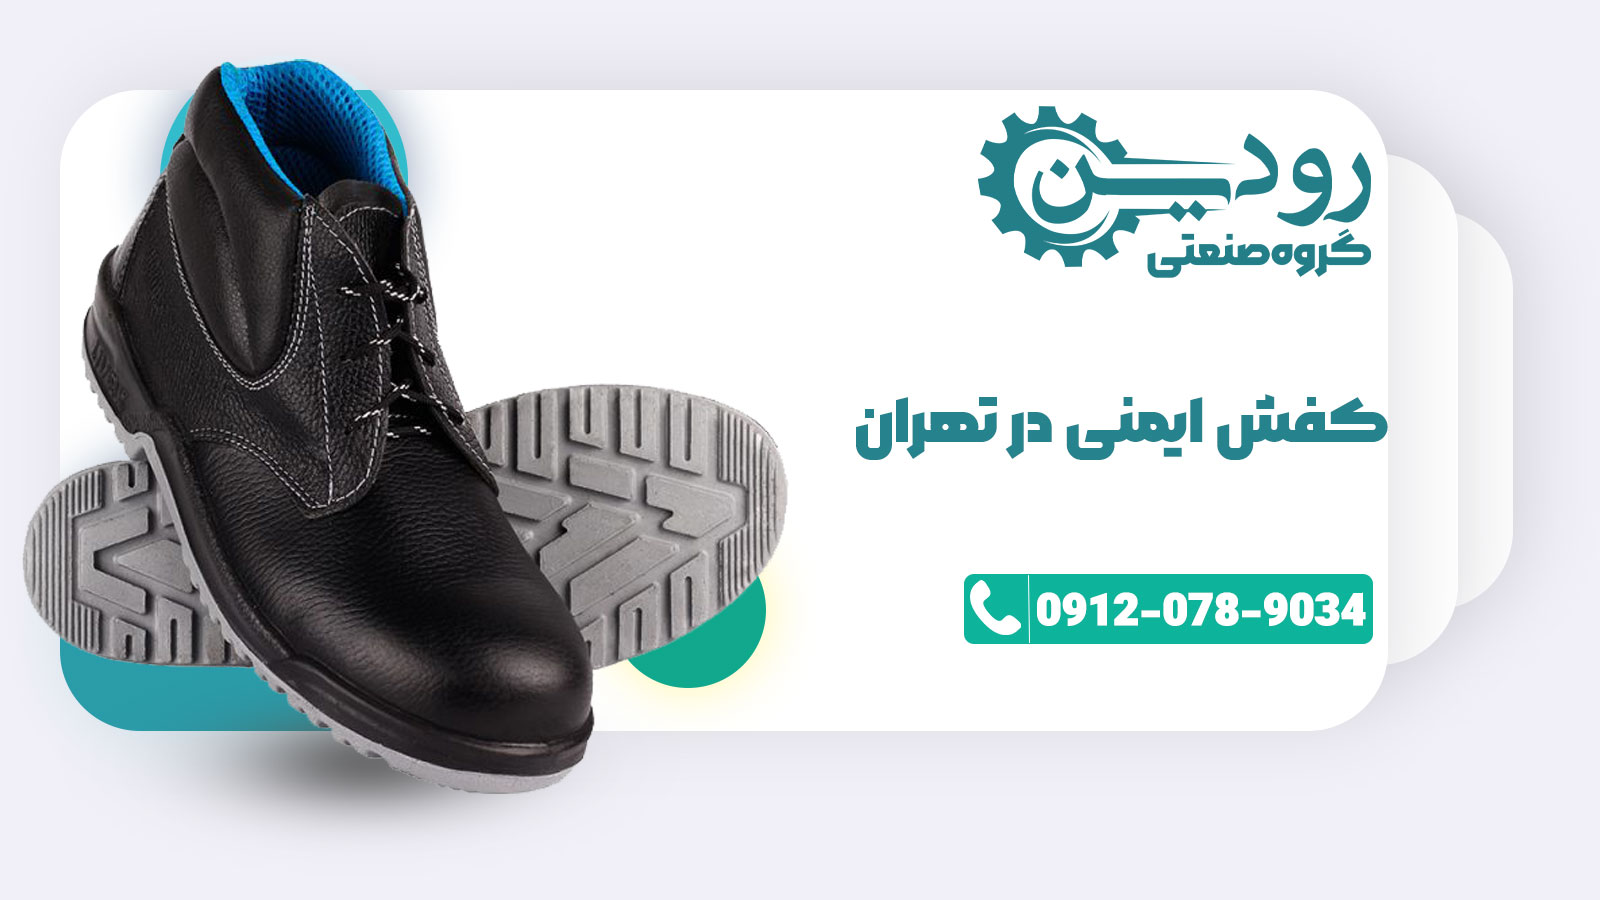 فروشگاه کفش کار تهران نمونه های ارزان قیمت بسیار زیادی برای معرفی دارد.